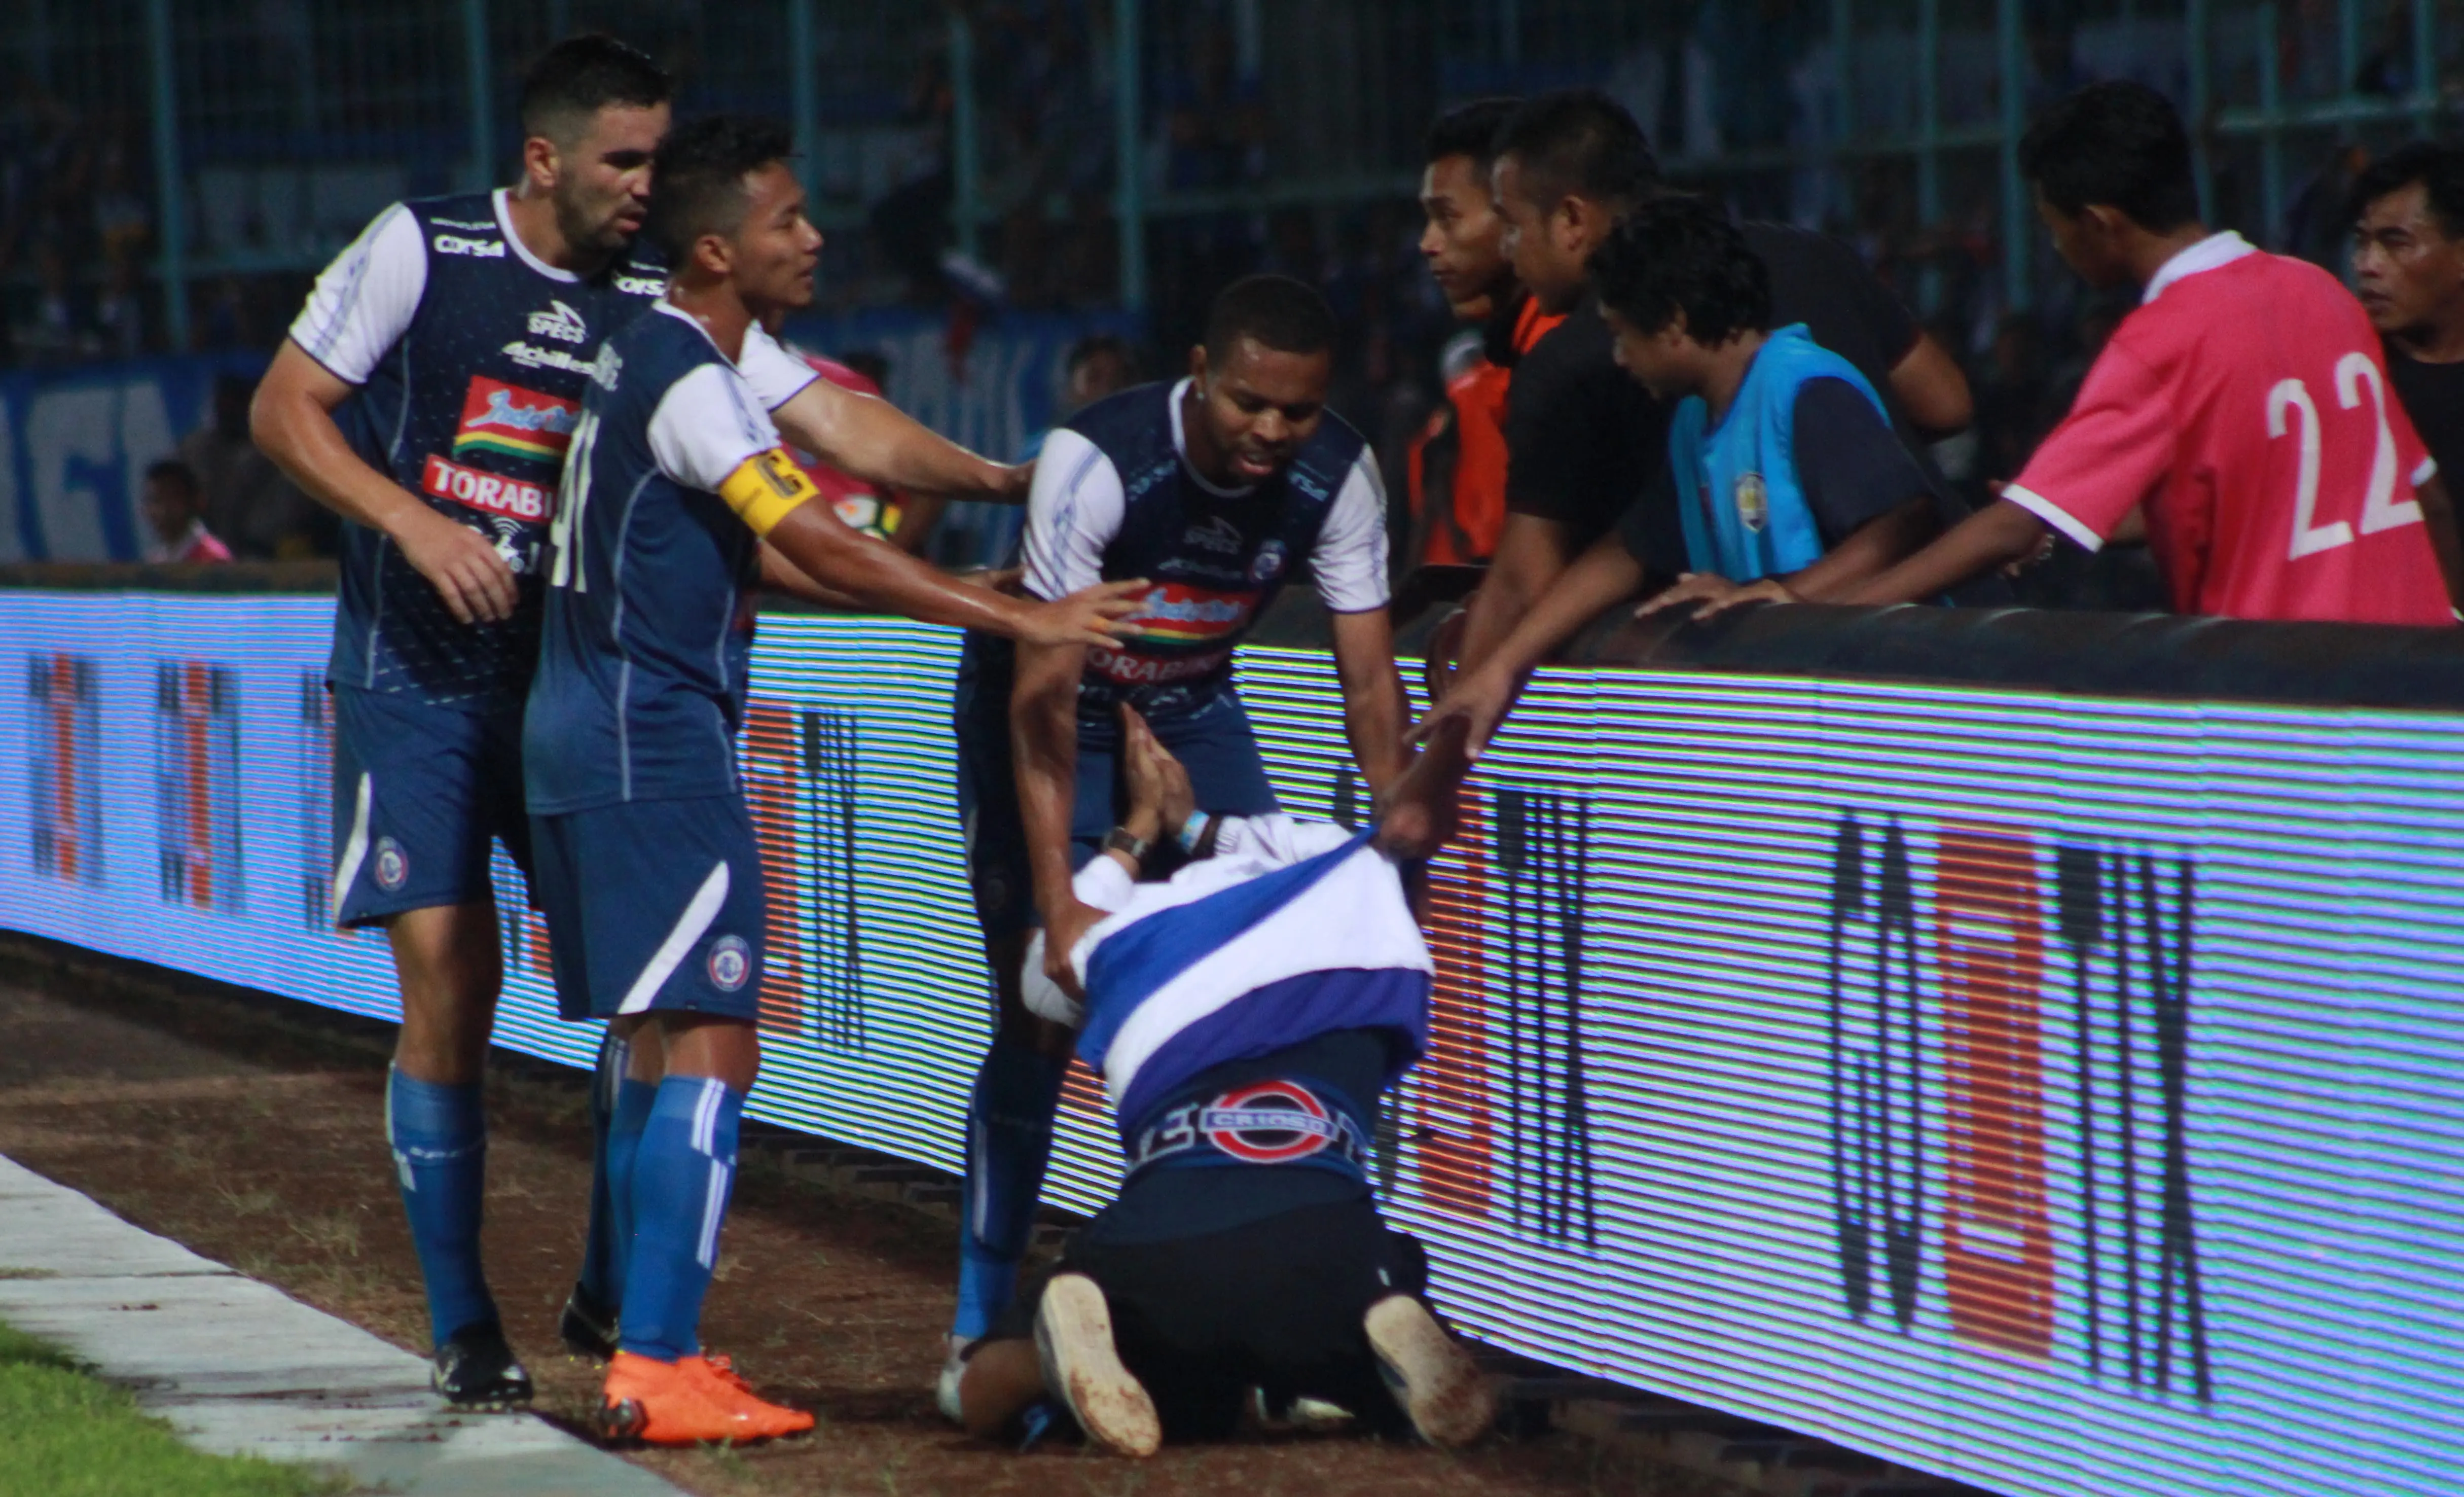 Pemain Arema FC mengembalikan seorang suporter yang mencoba masuk lapangan saat duel kontra Persib Bandung, Minggu (16/4/2018) di Stadion Kanjuruhan. (Bola.com/Iwan Setiawan)